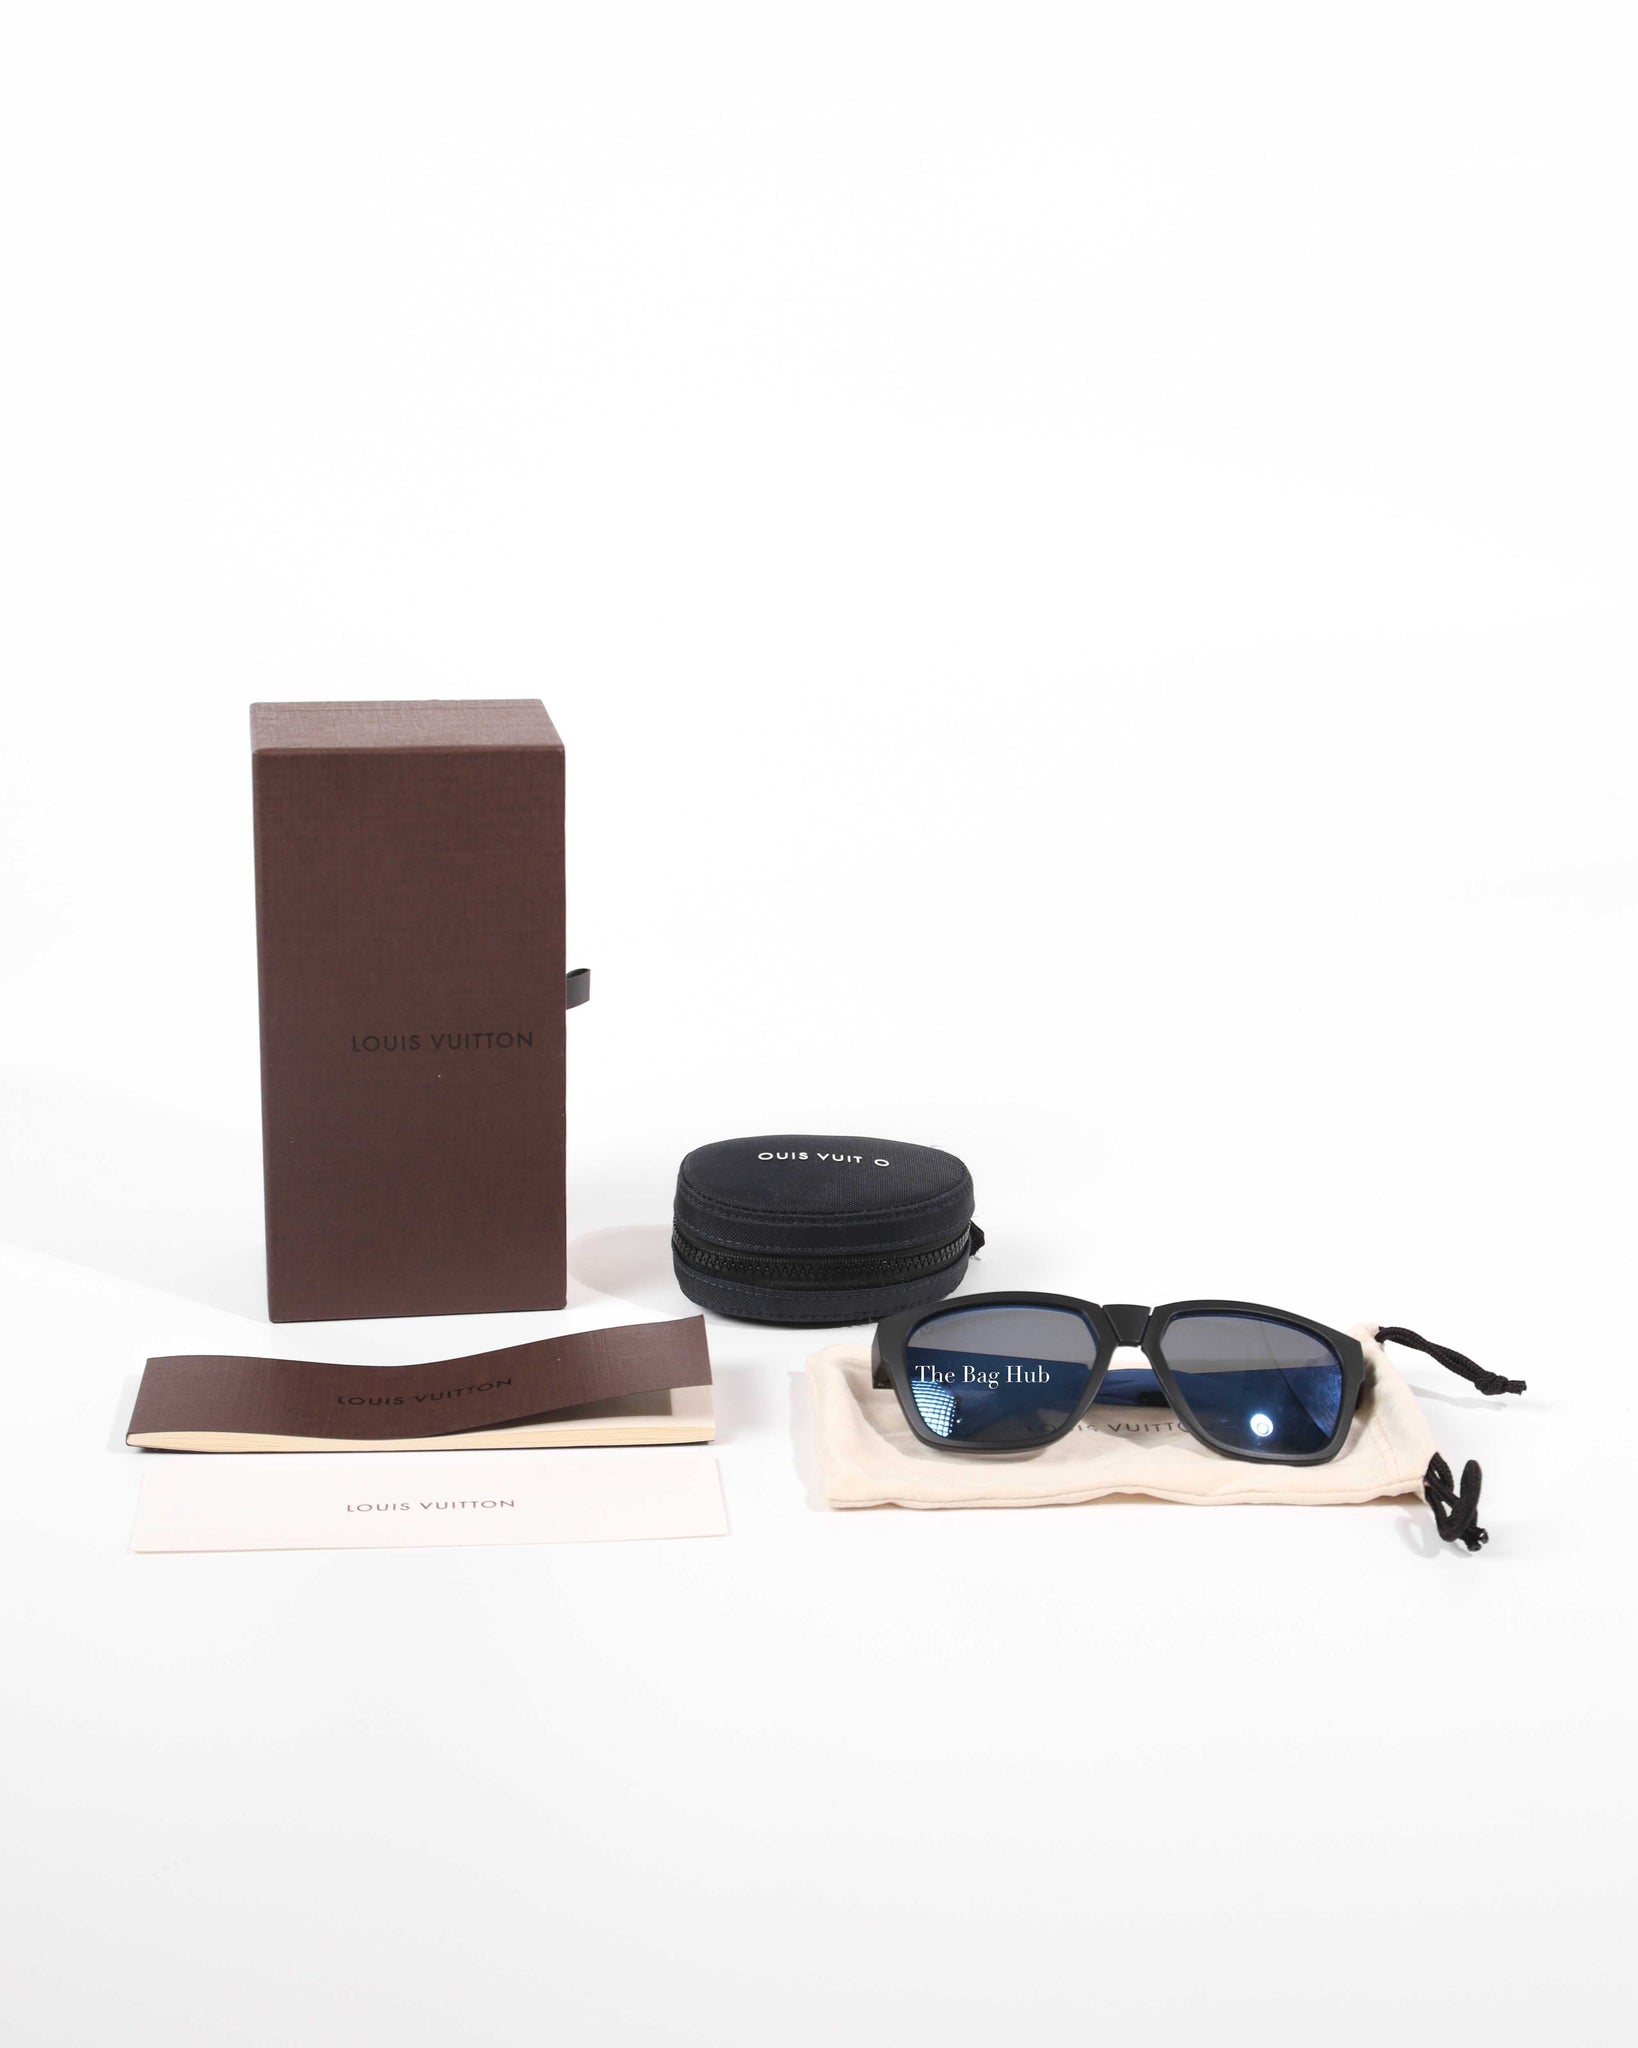 Louis Vuitton Blue/Black Gradient Z0745W Charlotte Sunglasses at